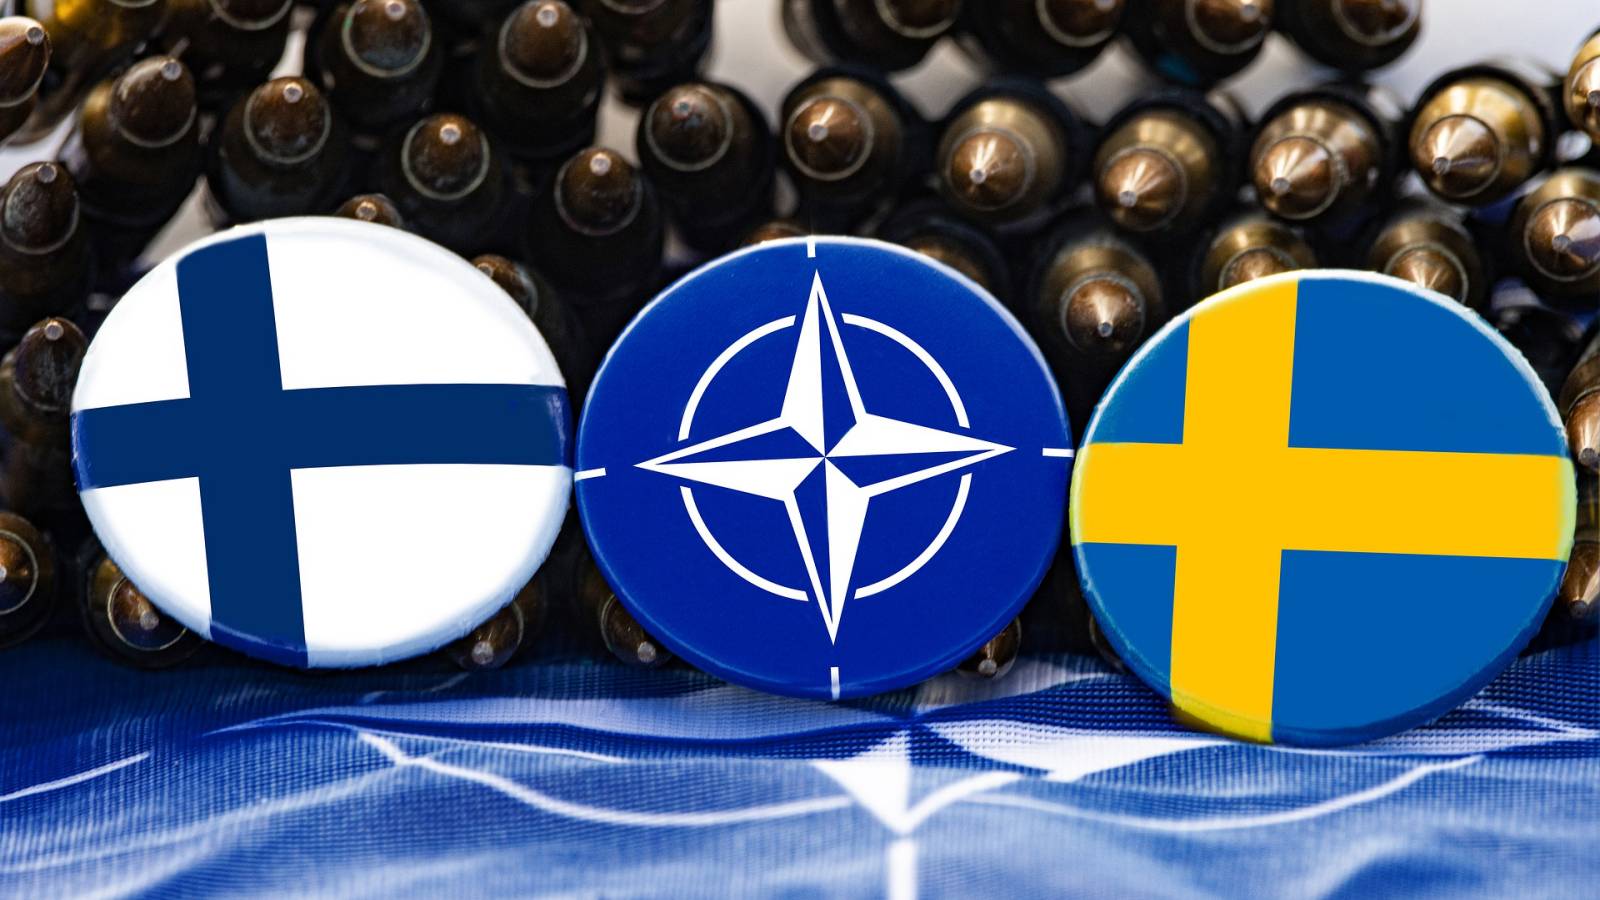 Finalnda Suedia semnat protocoalele aderare NATO